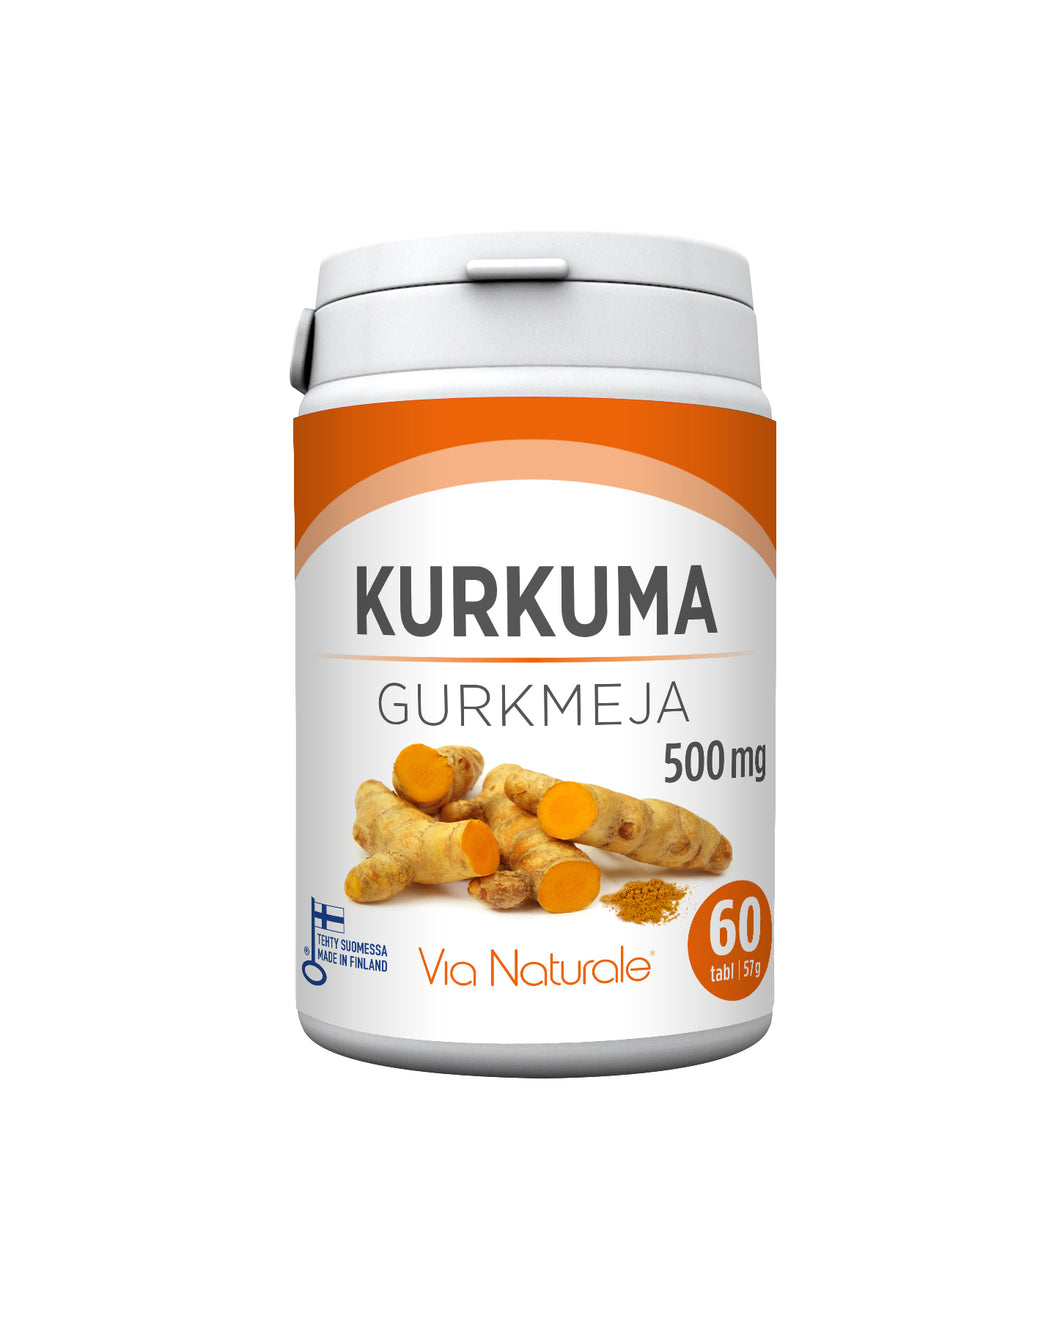 Via Naturale Kurkuma 500 mg